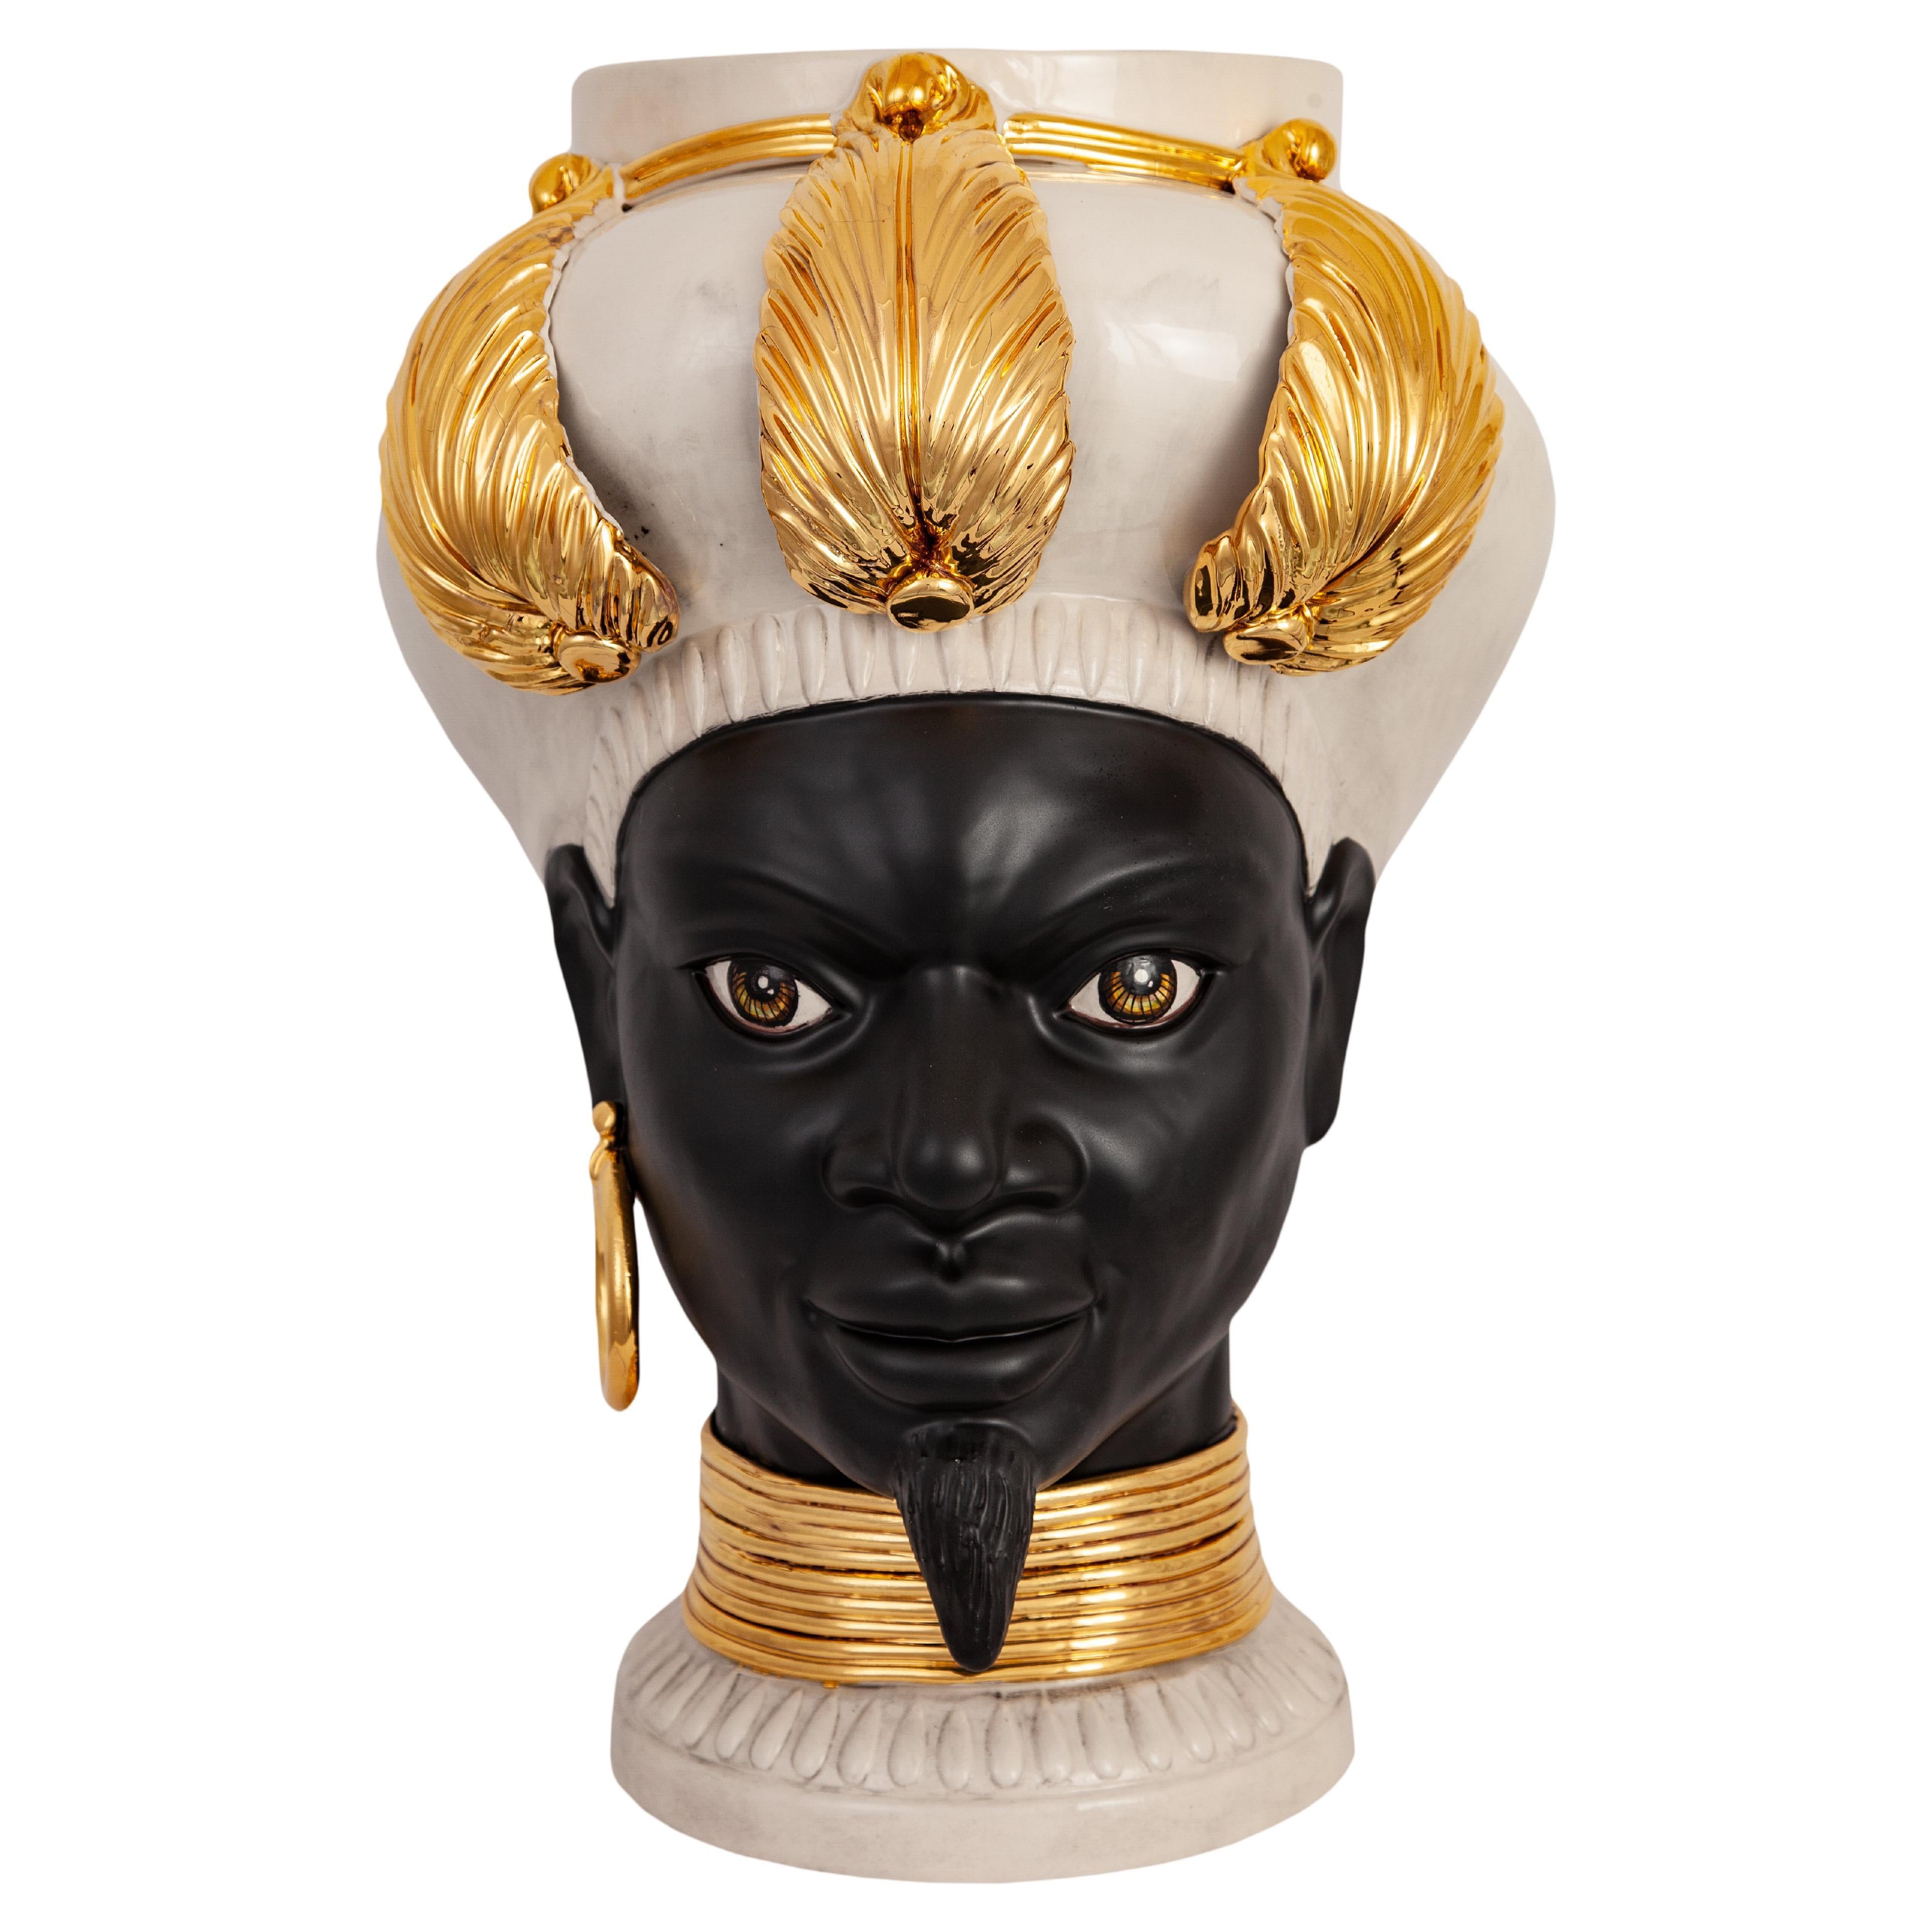 ISIDE I21, Man's Moorish Head, Handmade in Sicily, 2021, Golden, Size L